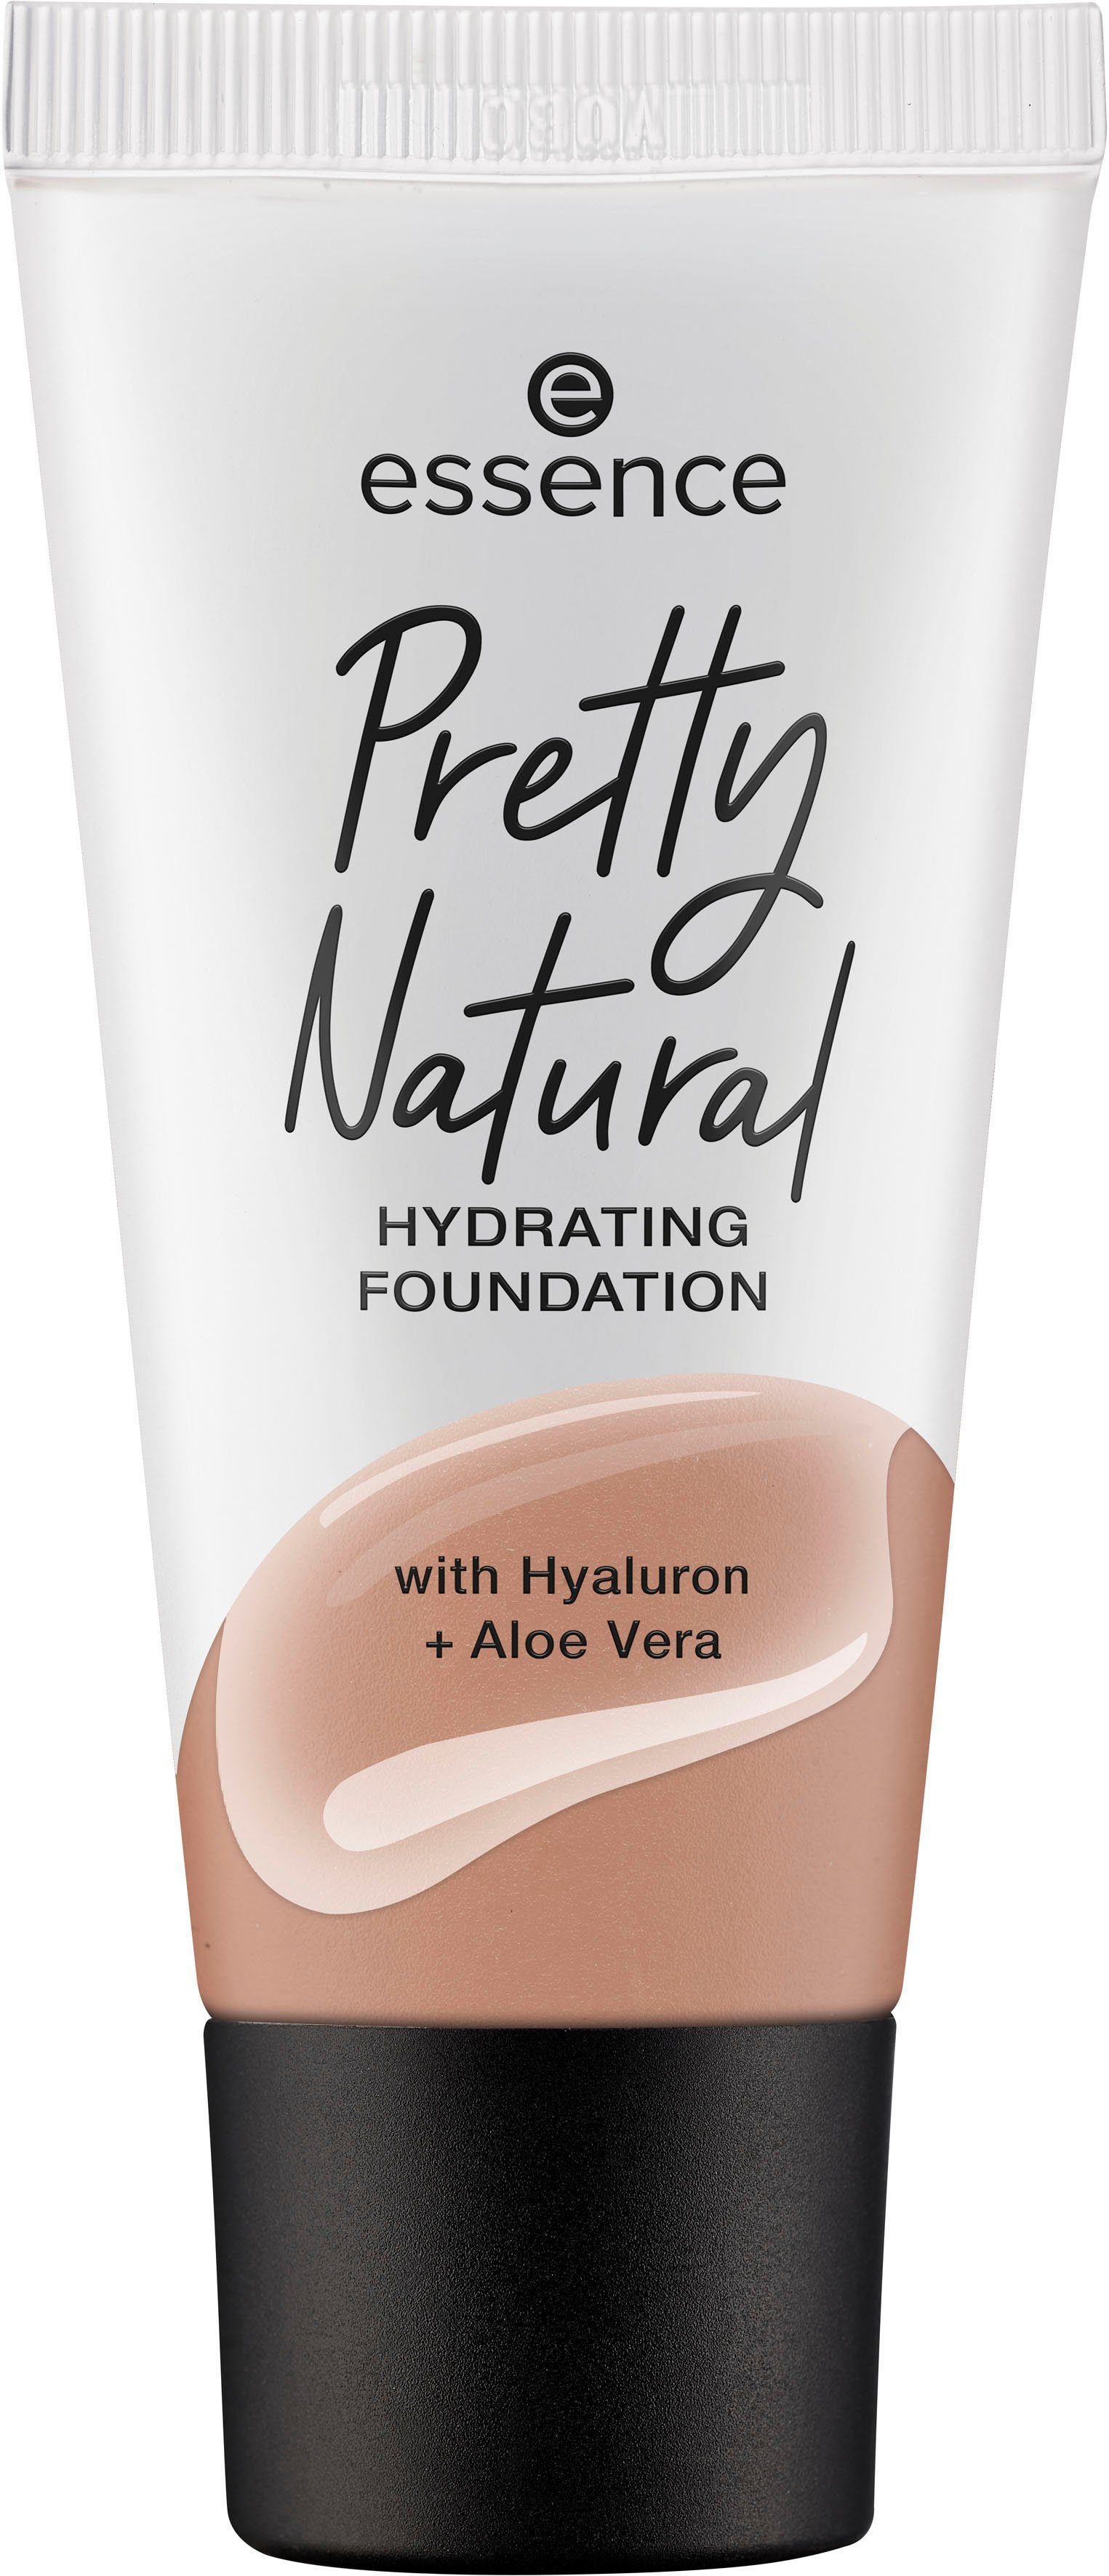 Essence Foundation Nutmeg Warm 3-tlg. Pretty Natural HYDRATING